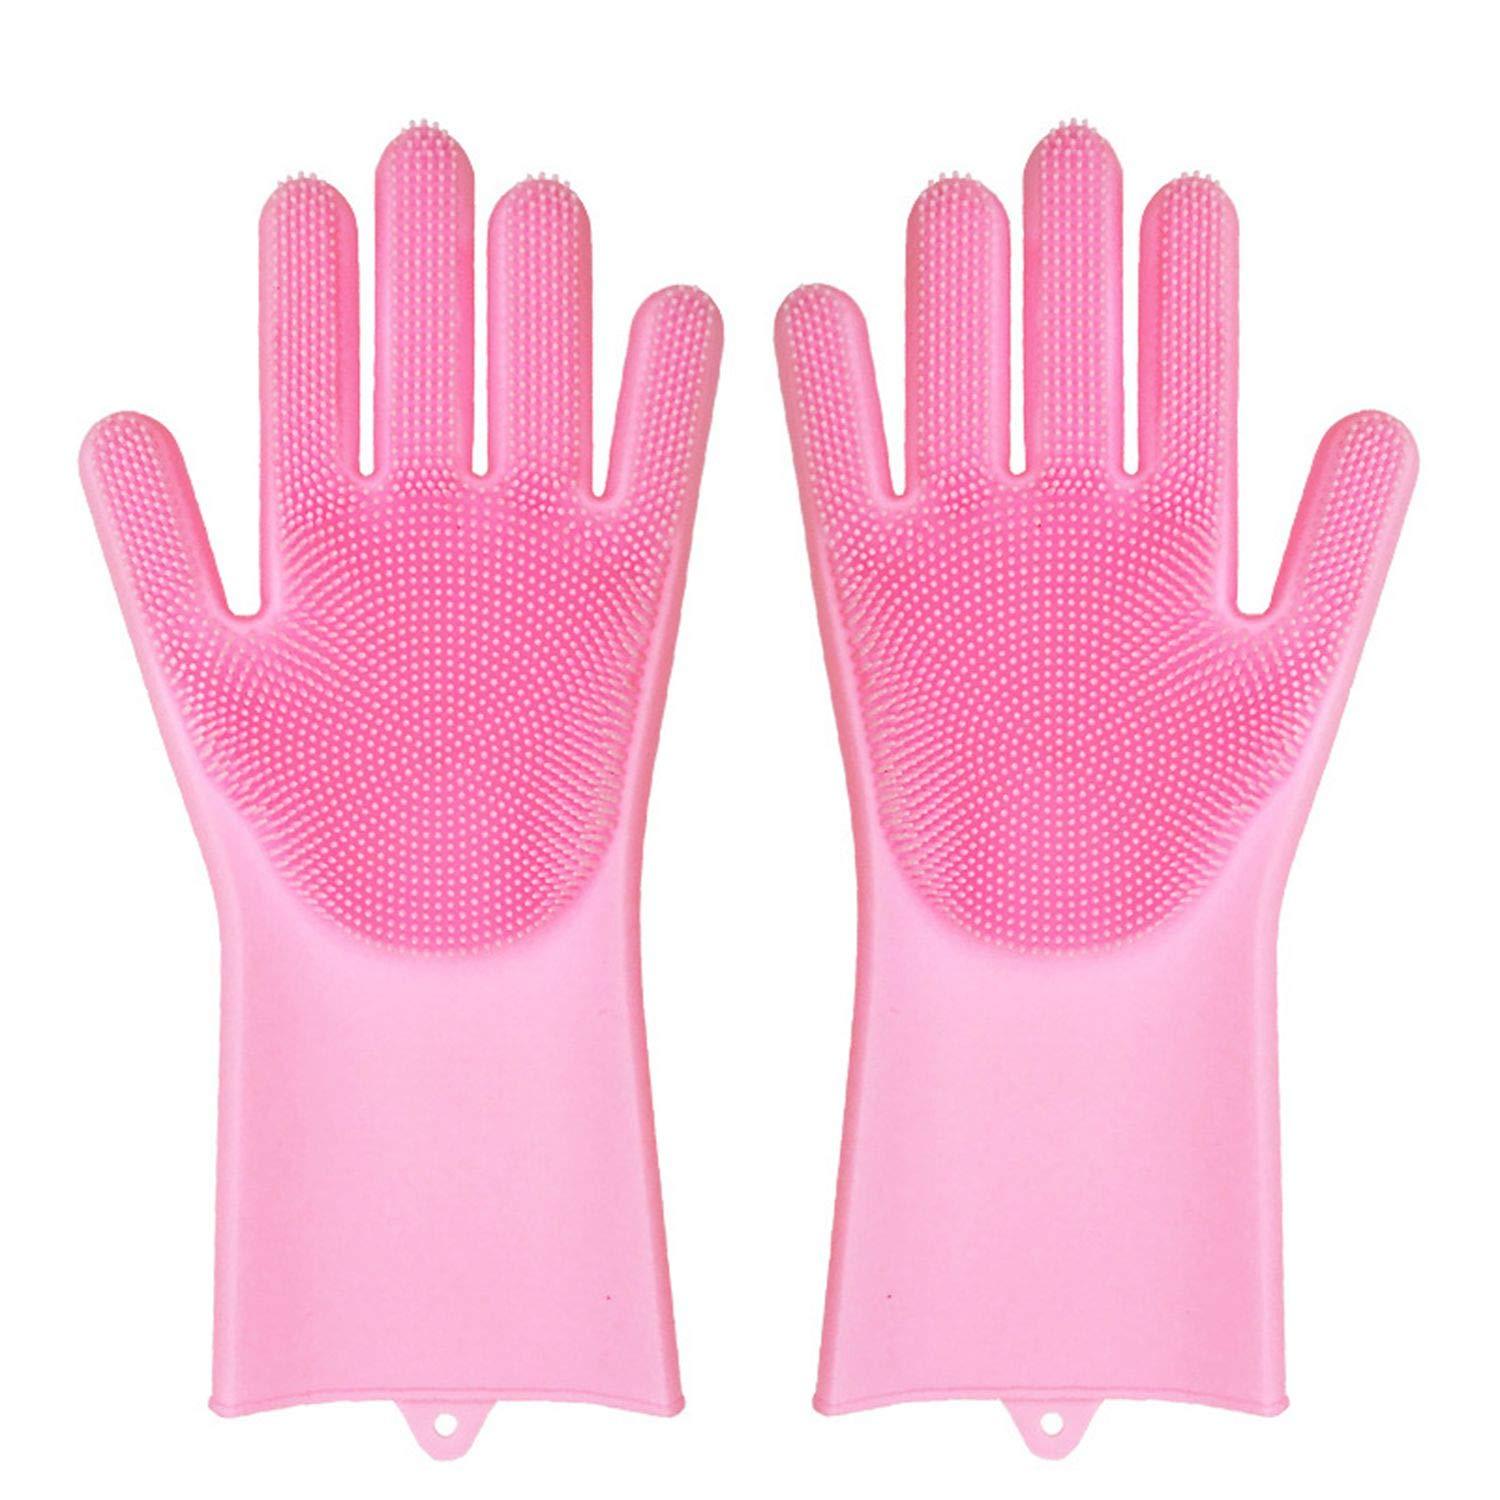 Original Magic Dishwashing Gloves (BPA Free) - Decotree.co Online Shop